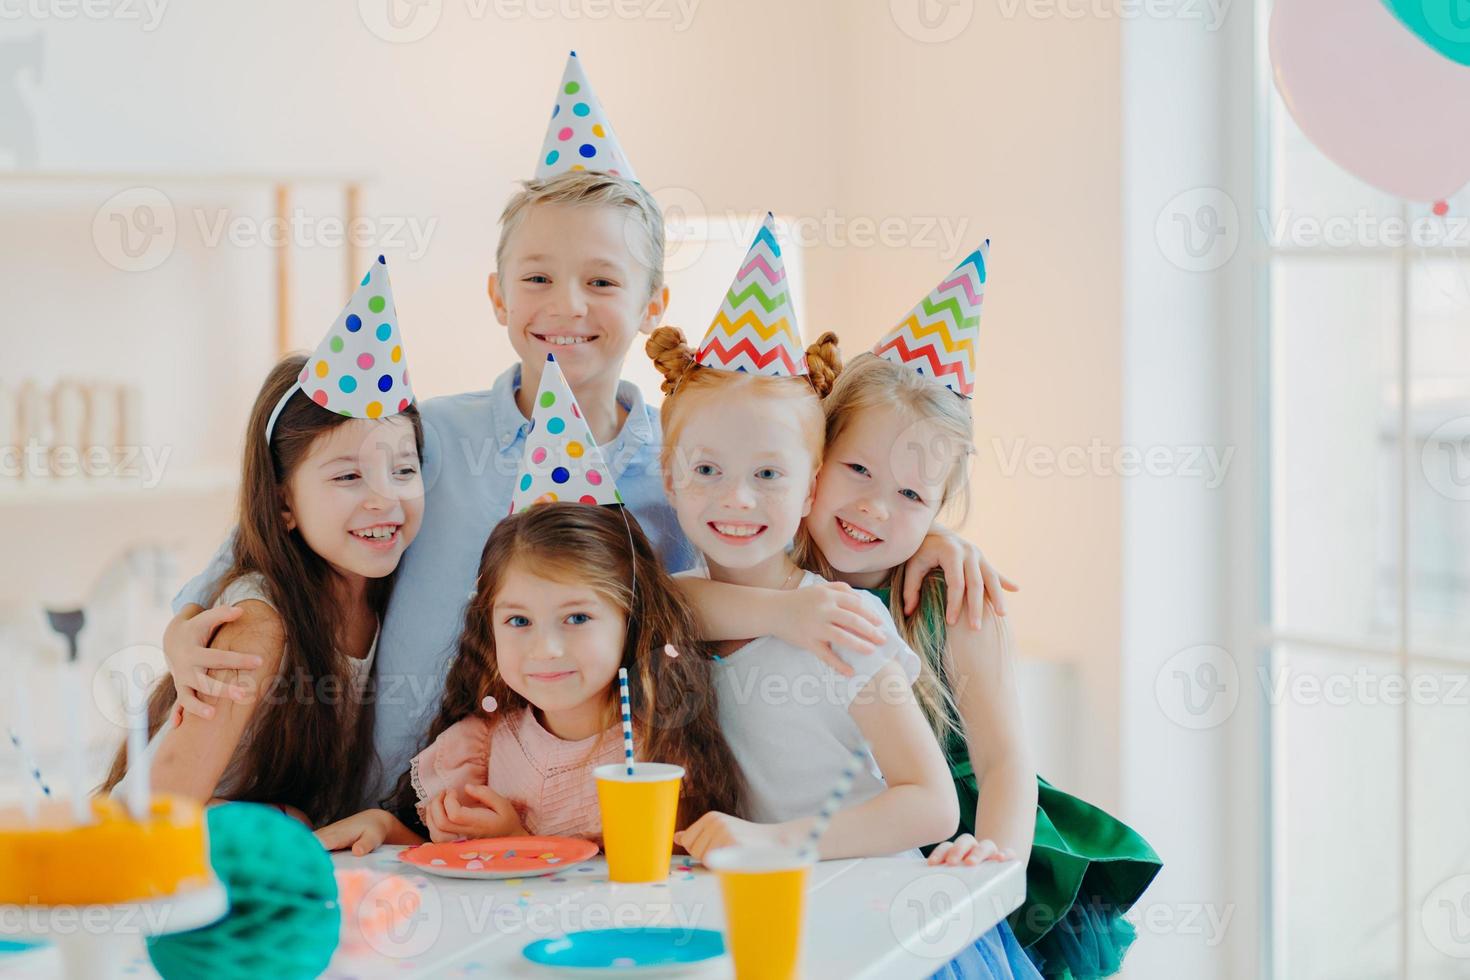 cinque simpatici bambini indossano cappucci festosi a cono, si abbracciano e fanno foto insieme, giocano e festeggiano il compleanno, hanno espressioni felici, posano a tavola festiva